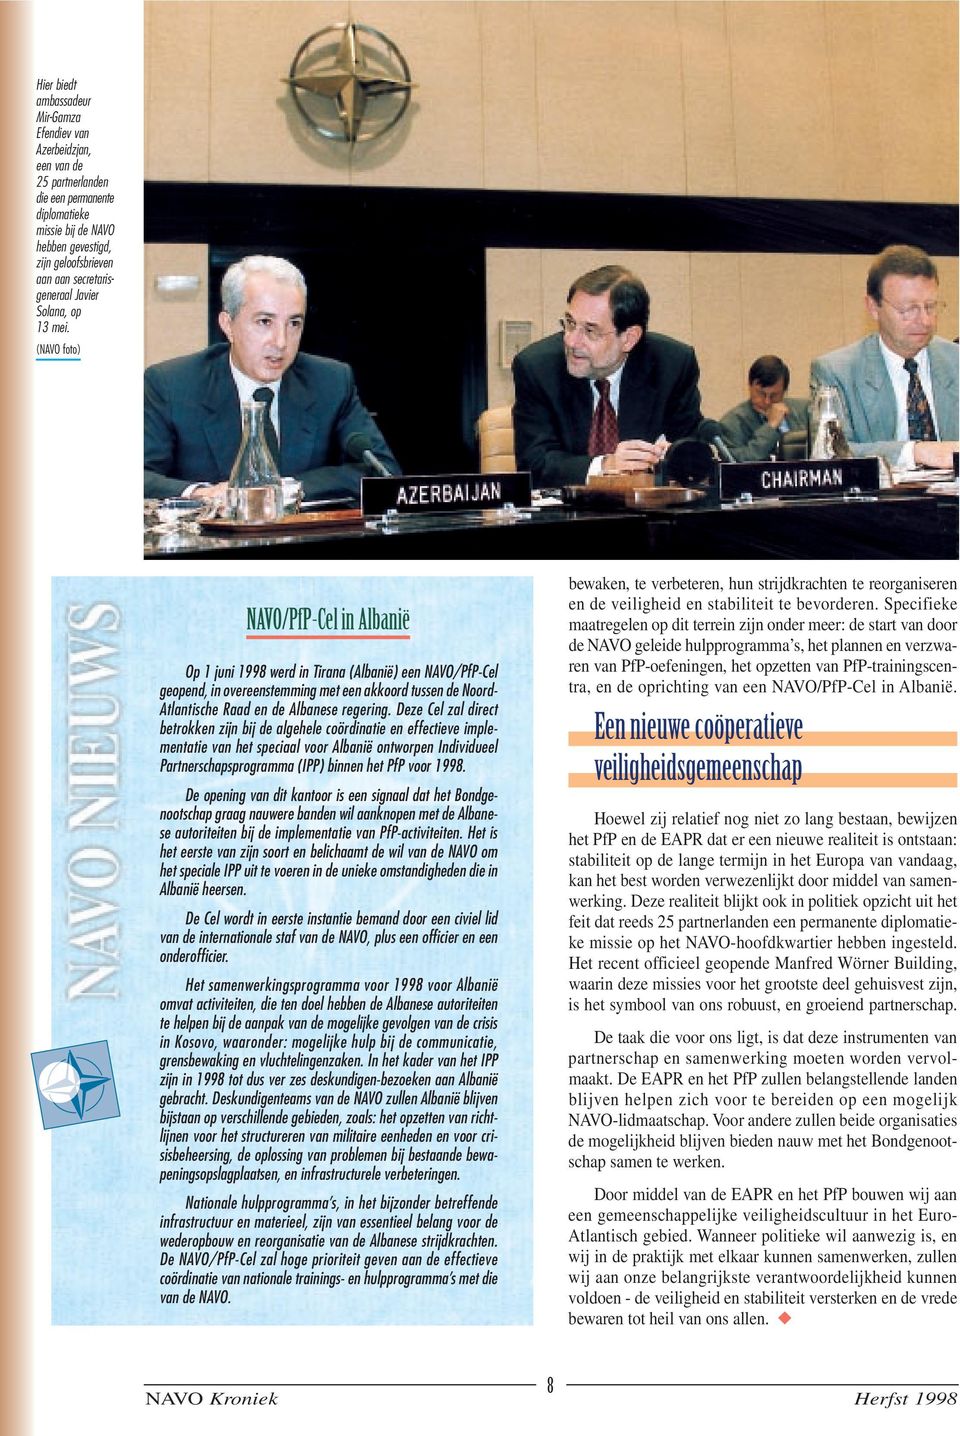 (NAVO foto) NAVO/PfP-Cel in Albanië Op 1 juni 1998 werd in Tirana (Albanië) een NAVO/PfP-Cel geopend, in overeenstemming met een akkoord tussen de Noord- Atlantische Raad en de Albanese regering.